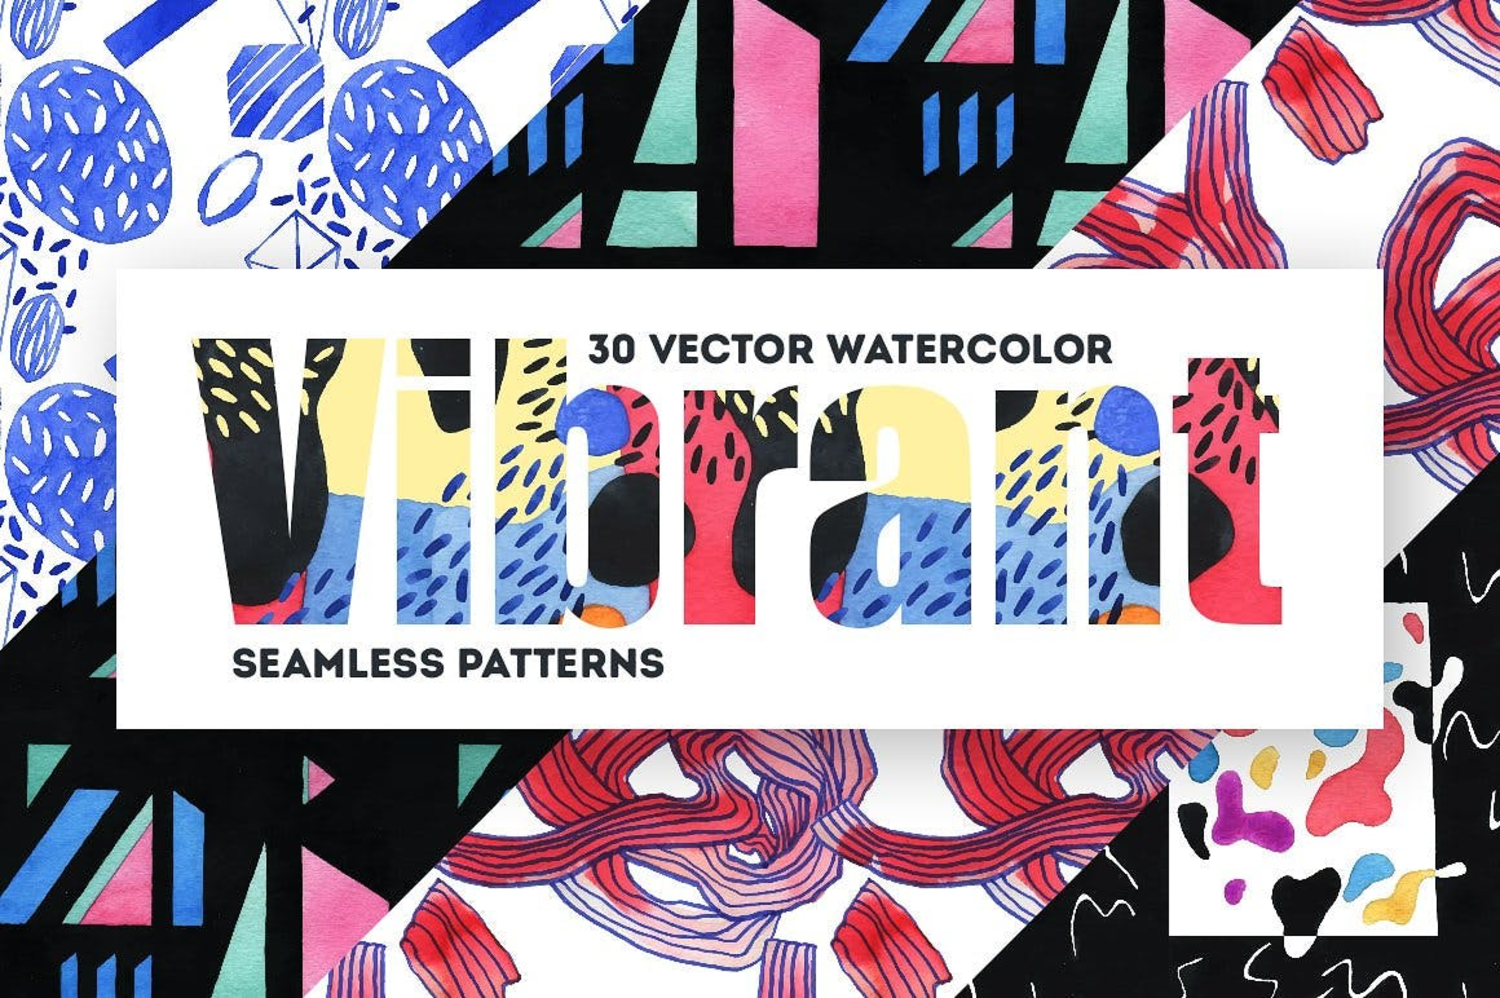 4864 时尚潮流抽象艺术涂鸦水彩绘画纹理背景底纹png图案设计素材 Vibrant Watercolor Patterns